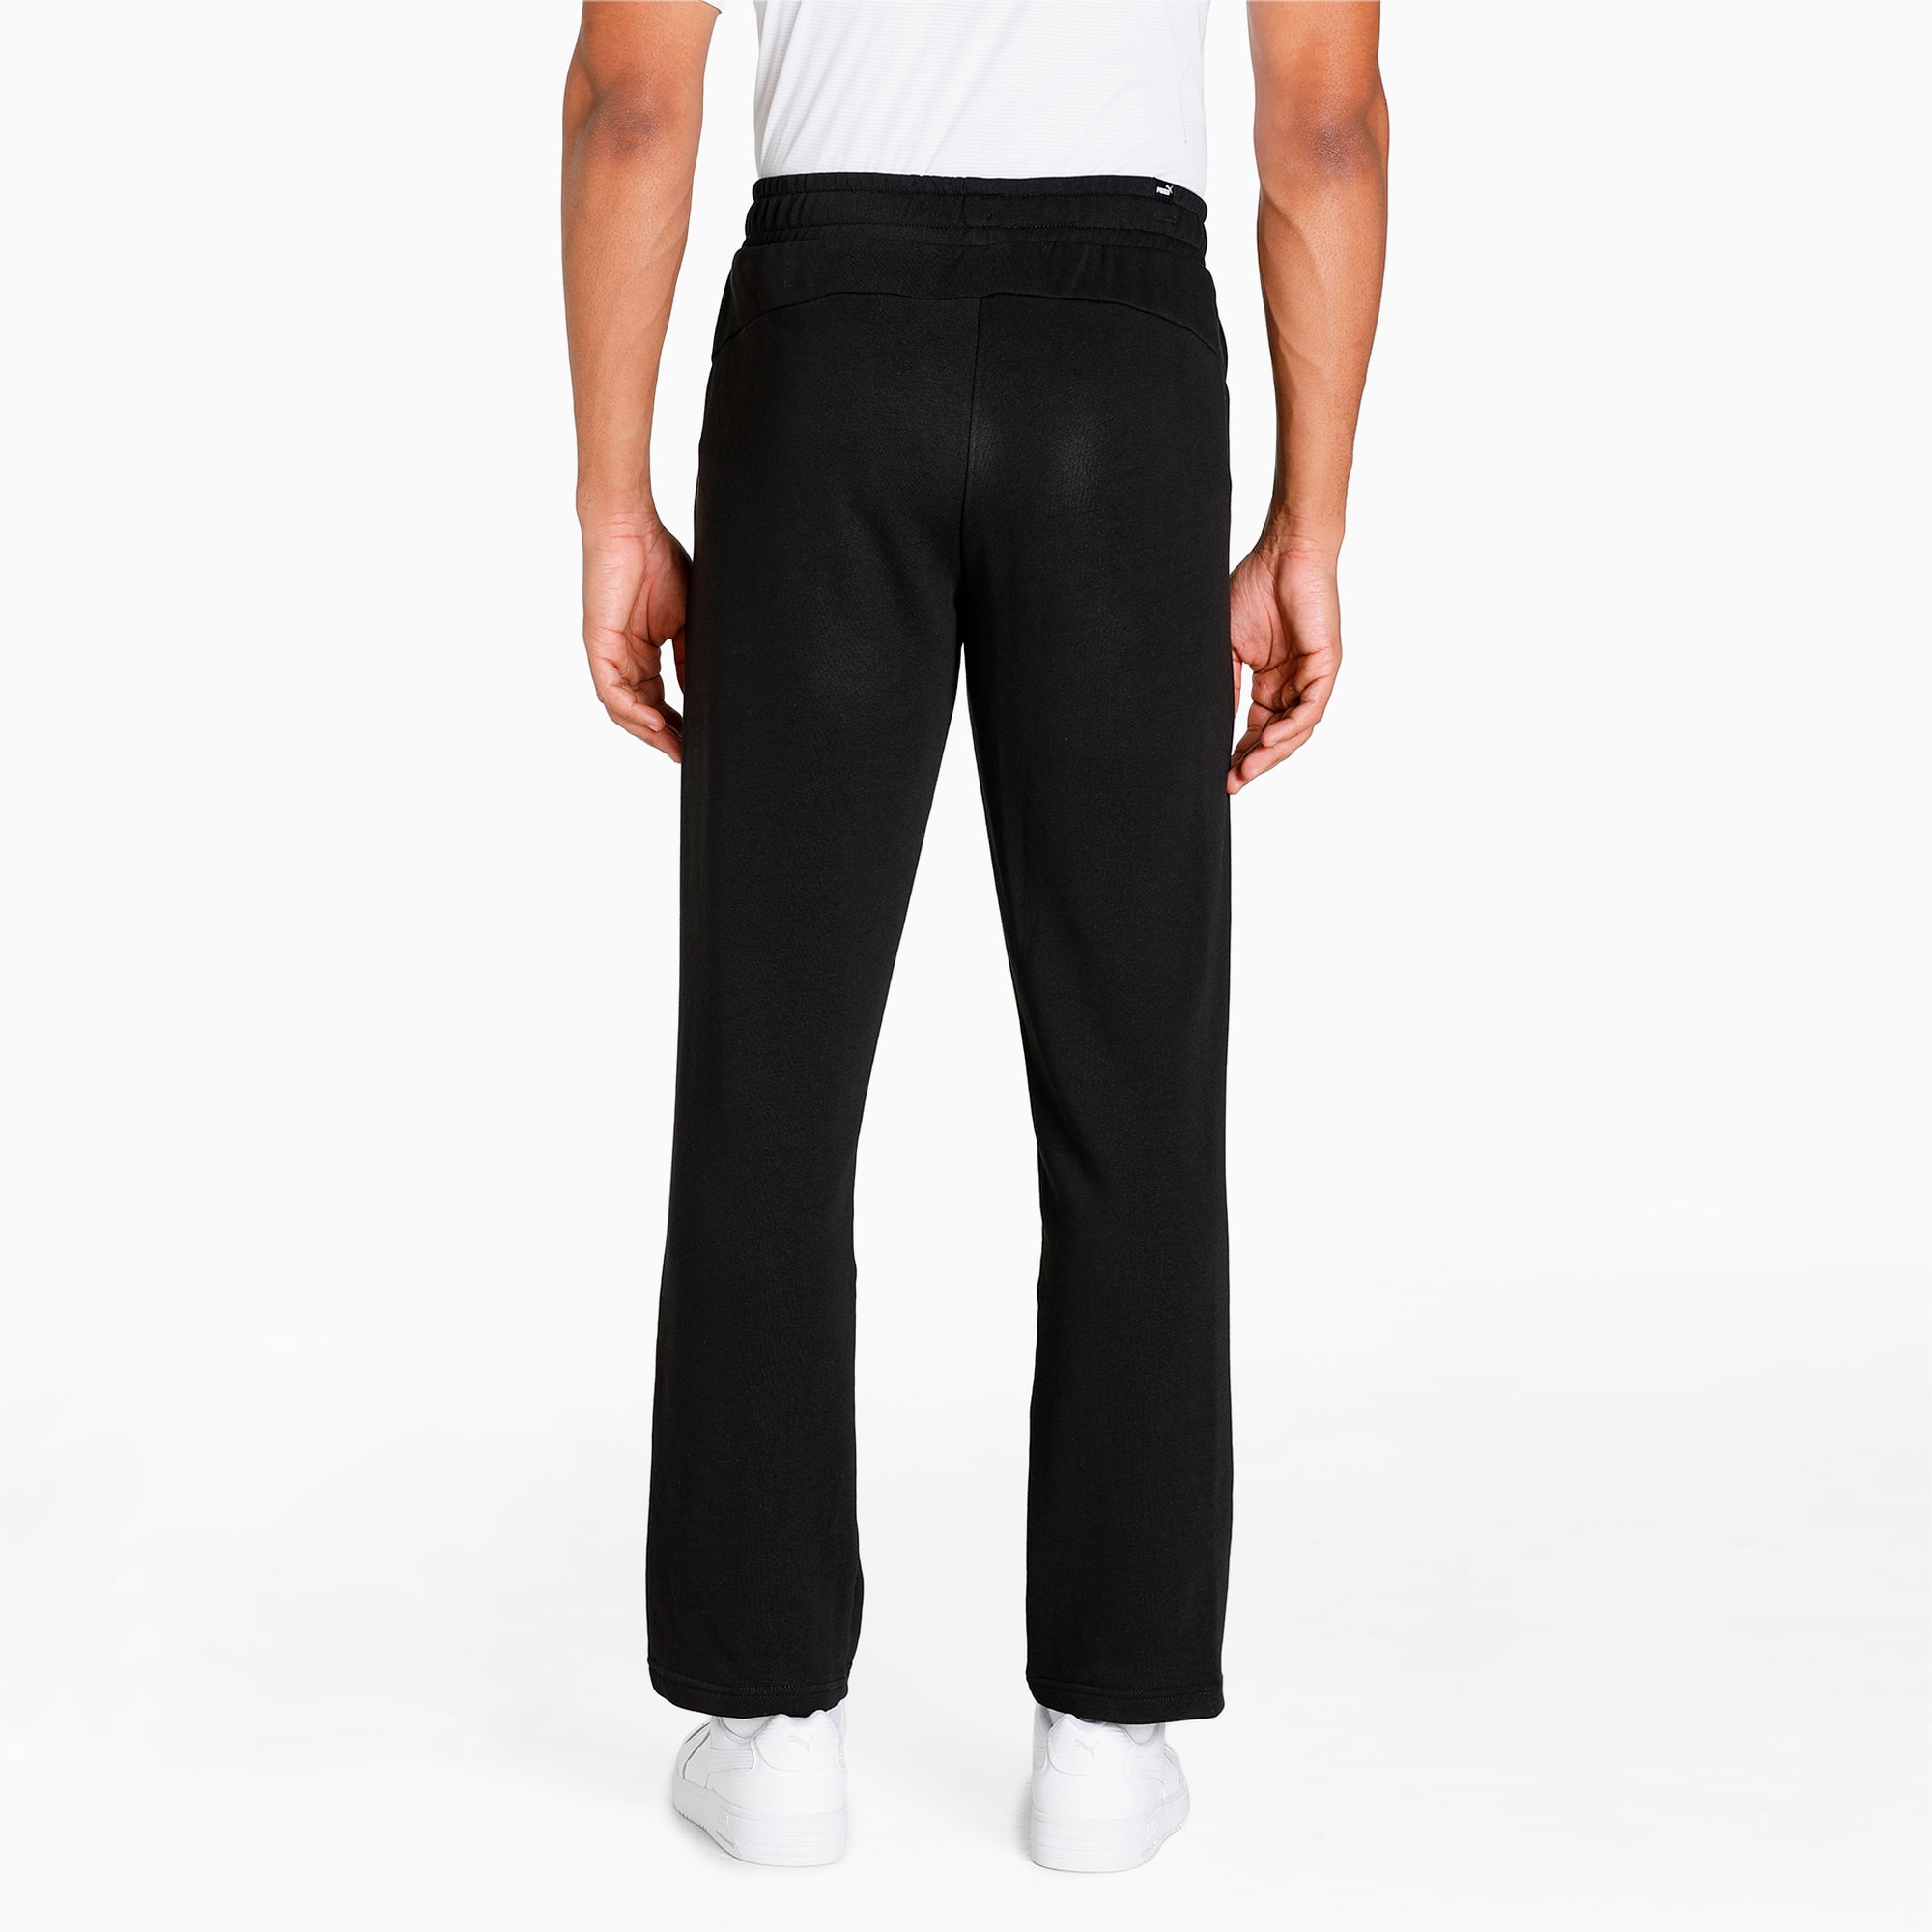 PUMA Essentials Logo Men's Sweatpants, Black, Size XL, Clothing